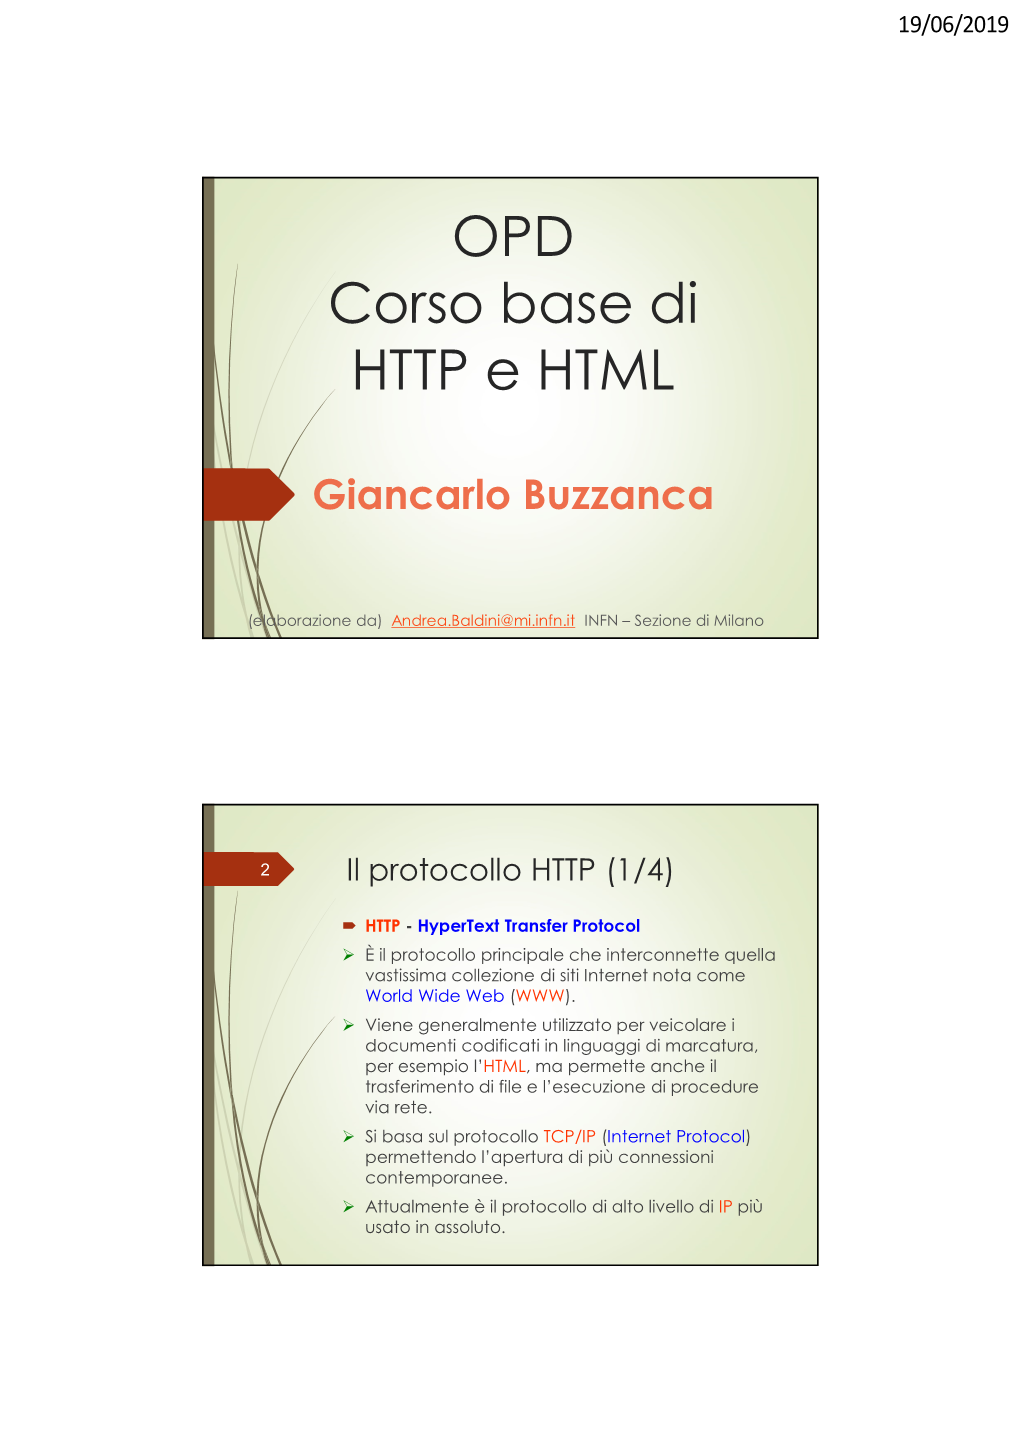 OPD Corso Base Di HTTP E HTML